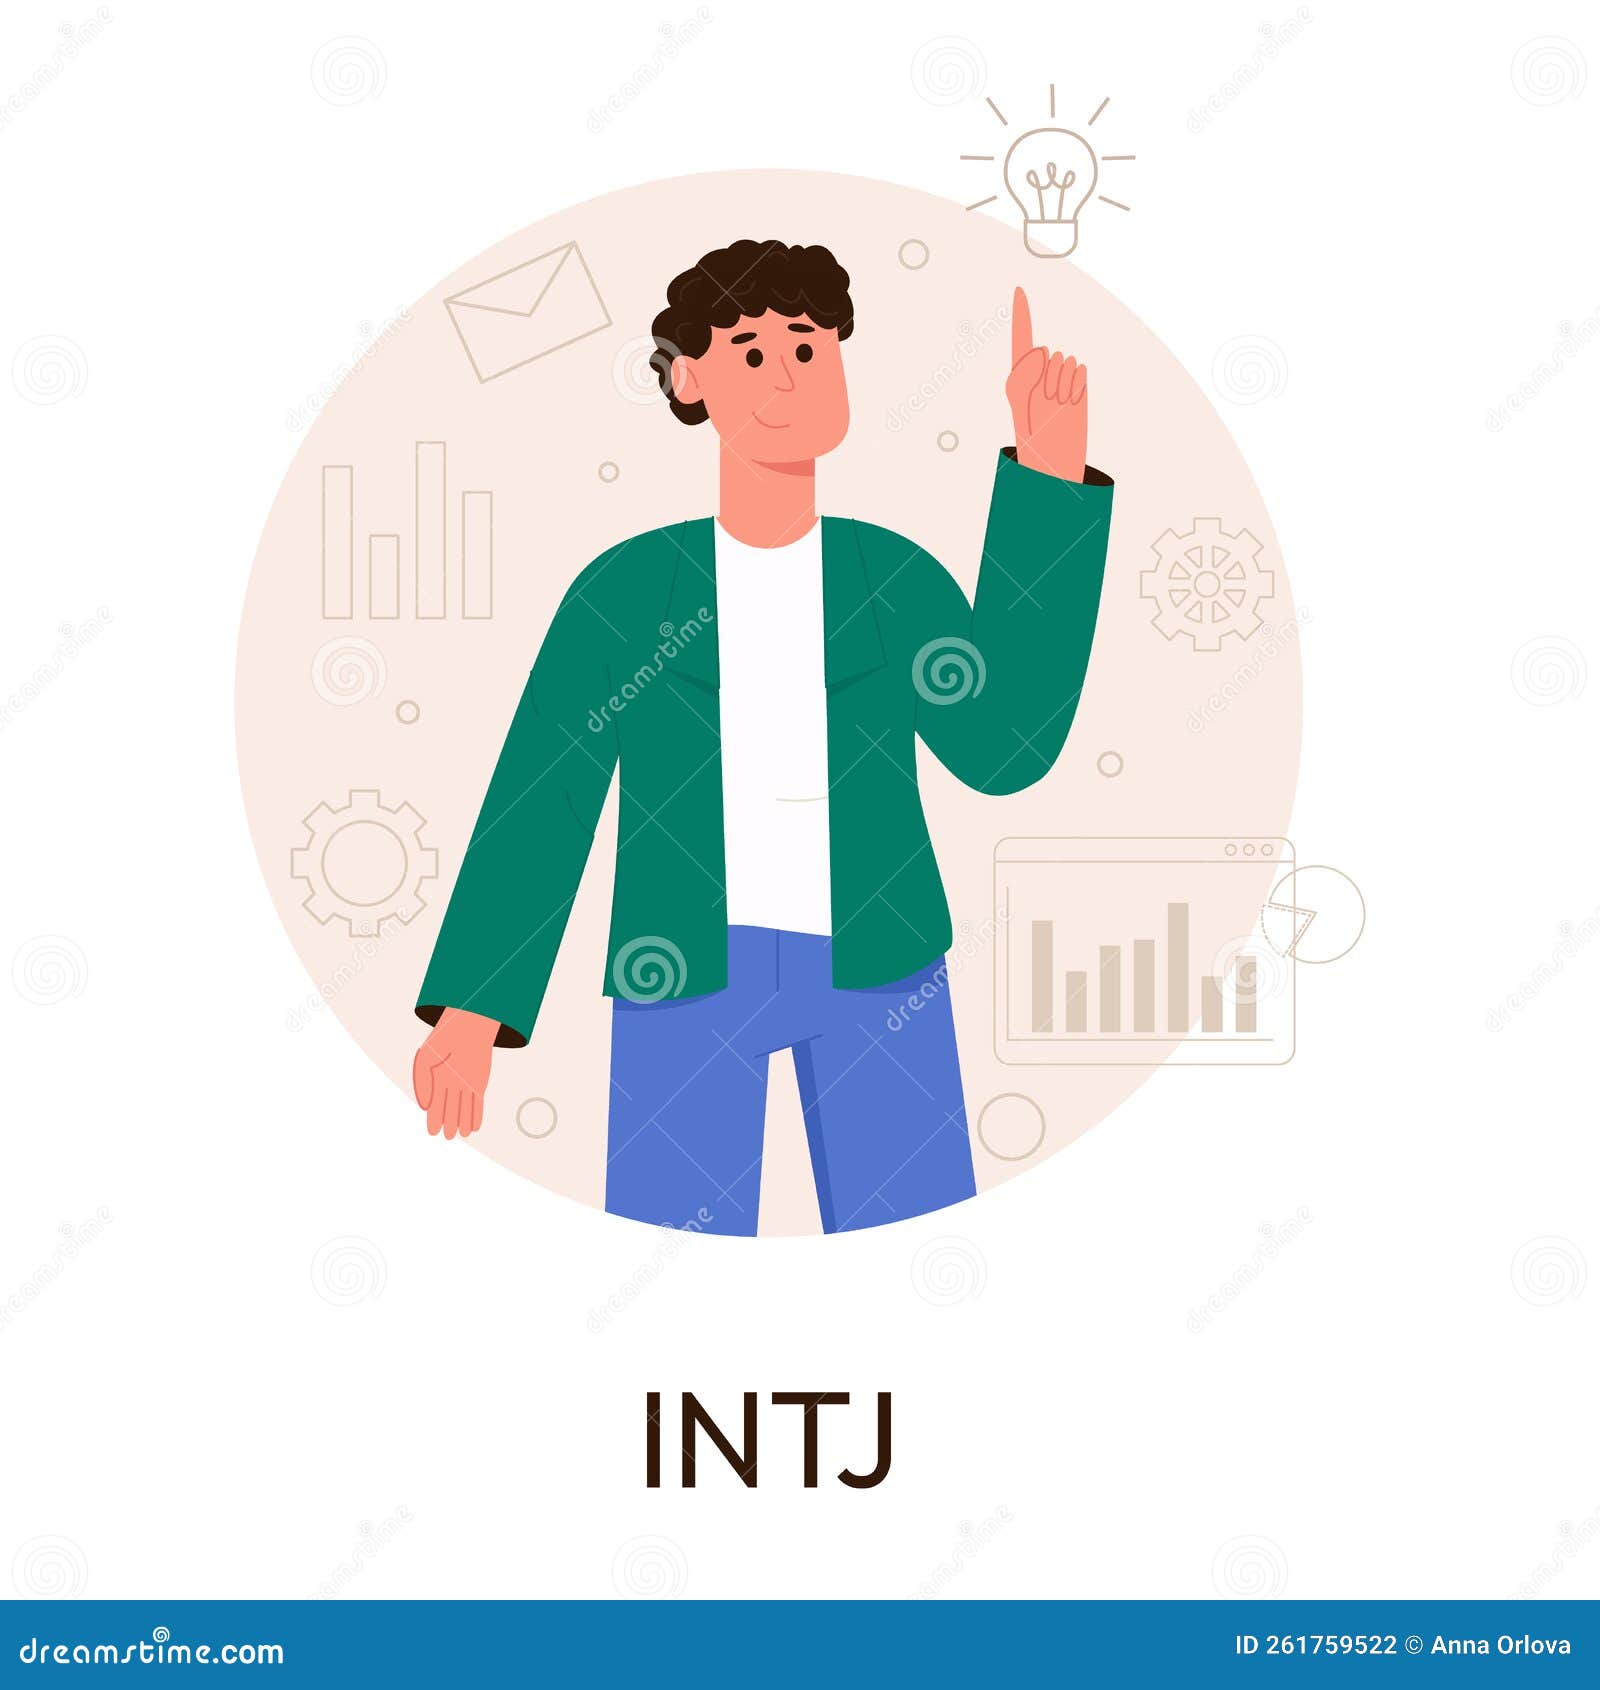 Intj Personality Stock Illustrations – 12 Intj Personality Stock  Illustrations, Vectors & Clipart - Dreamstime